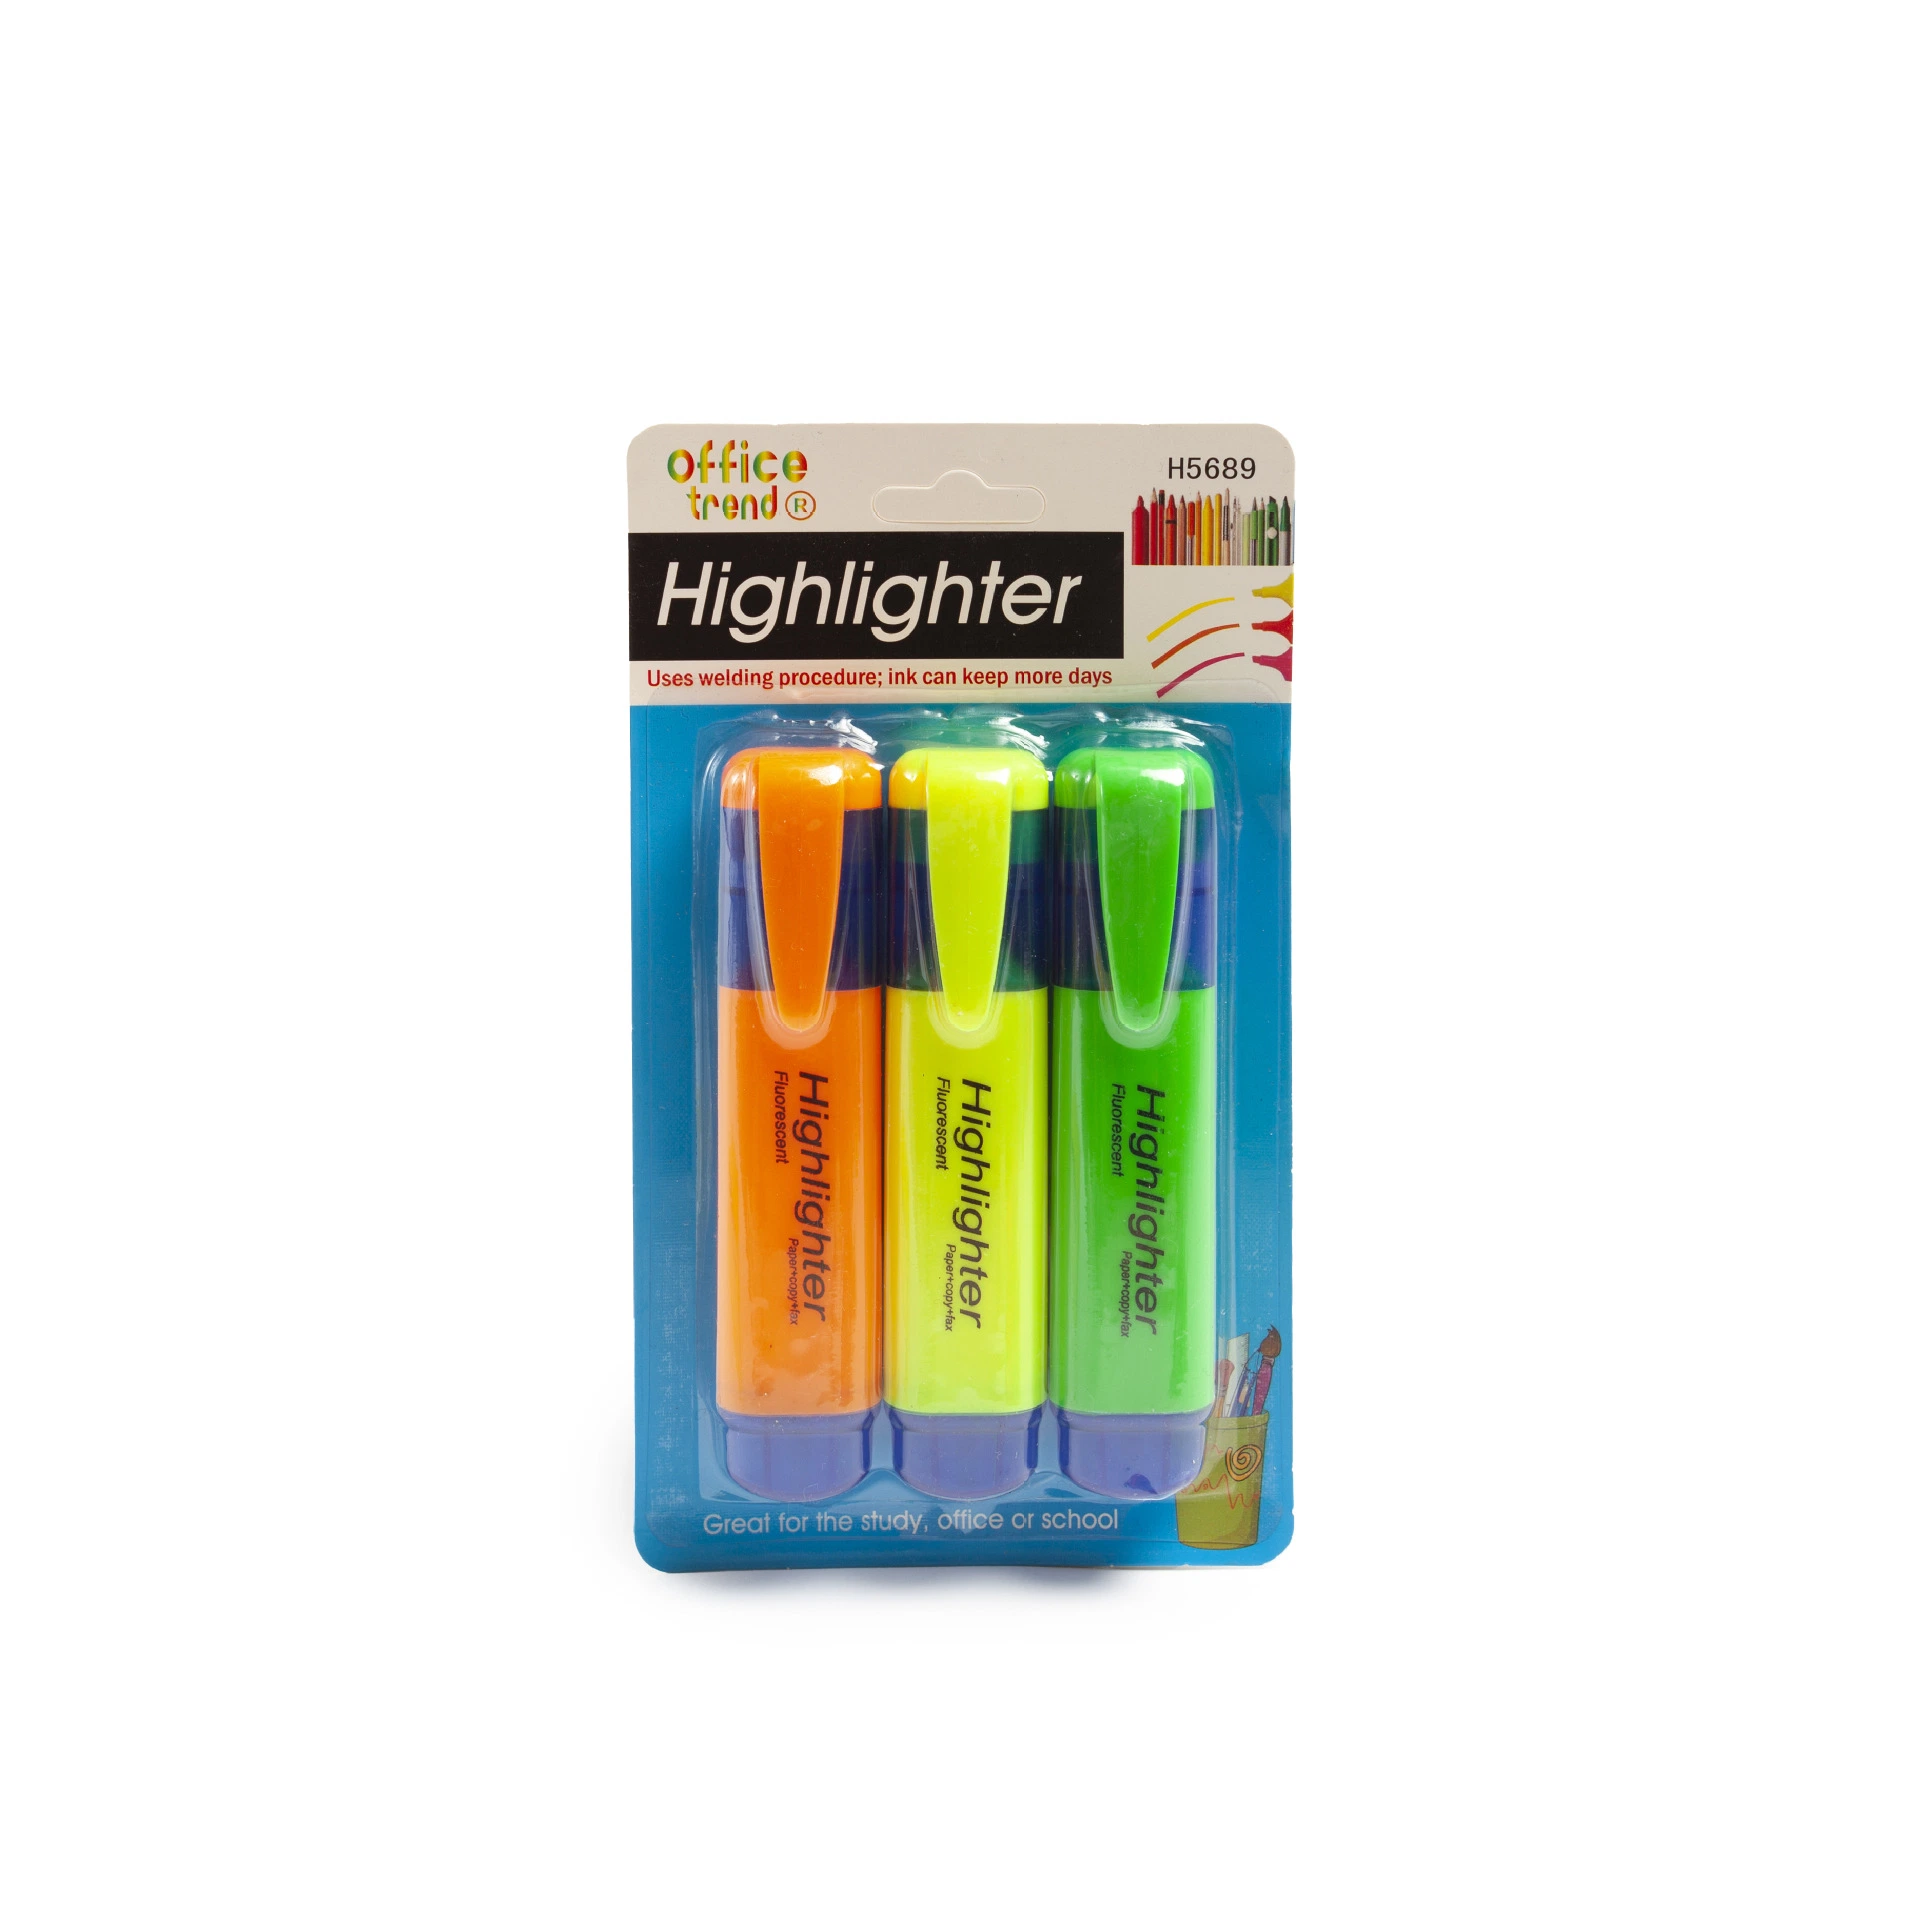 Ponta do cinzel Highlighters fluorescente, Dry-Quickly Non-Toxic marcadores de marca-texto, Depósito Highlighters, sortido, 2 cores/Pack, material escolar